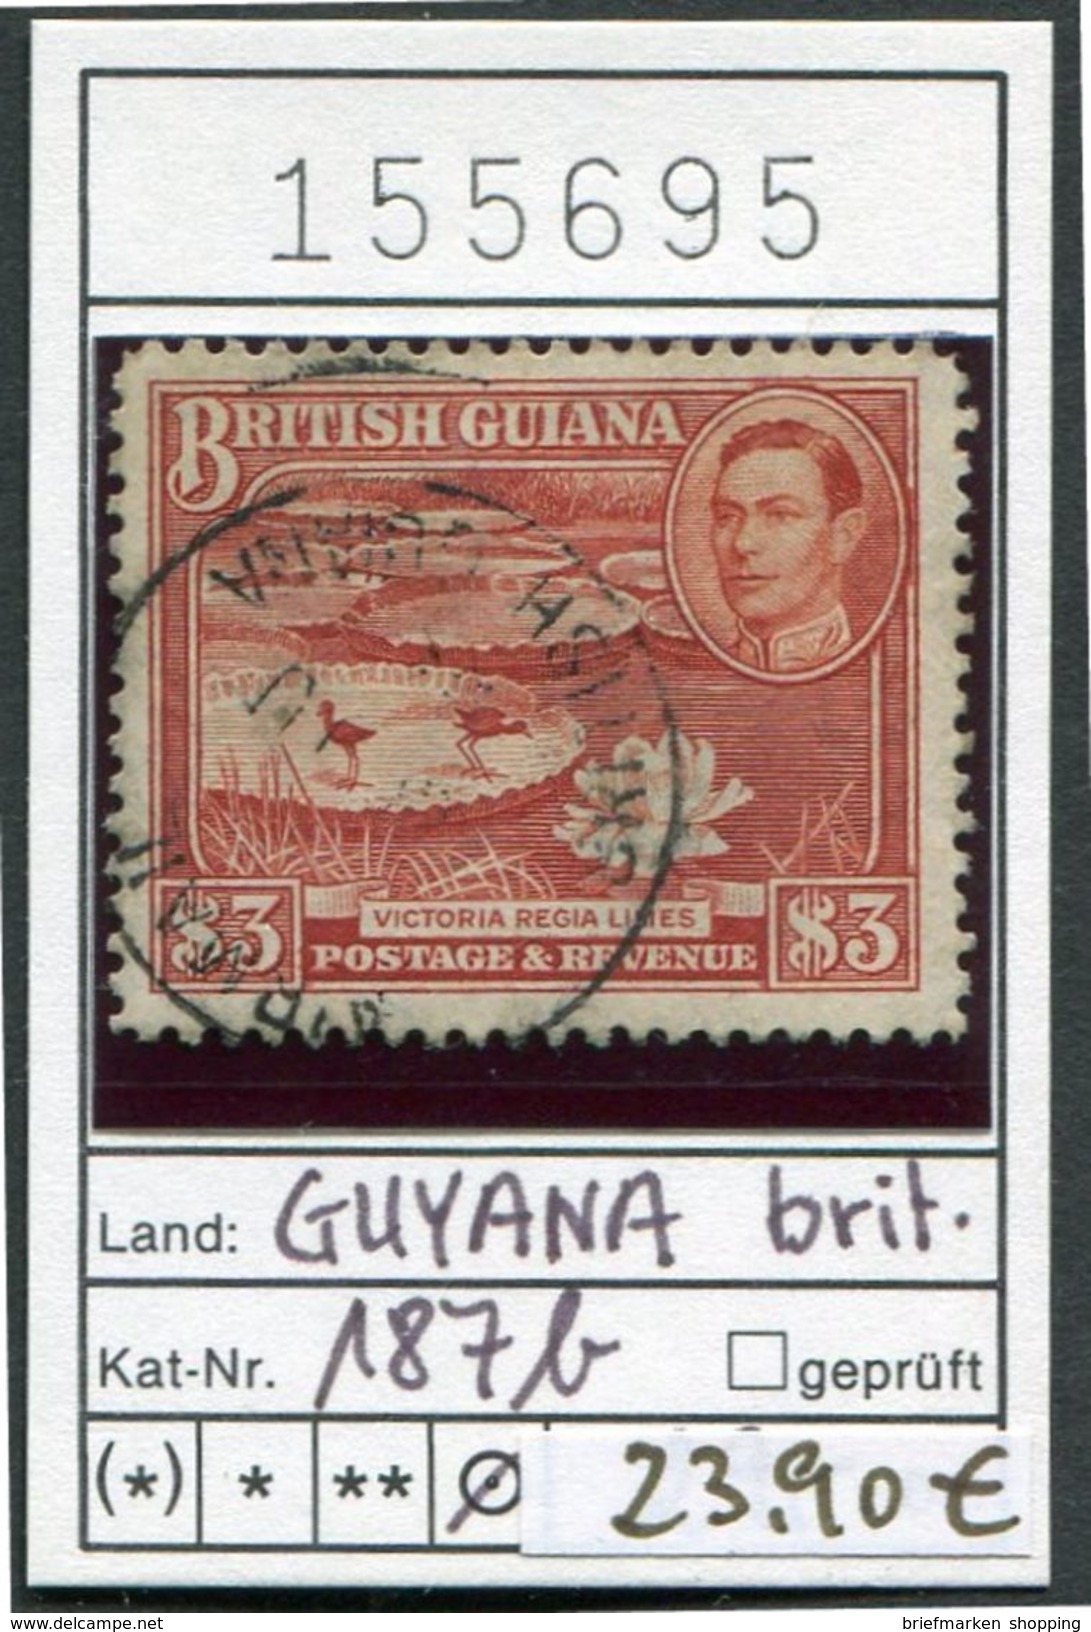 Britisch Guyana - British Guiana - Guayana - Michel 187b - Oo Oblit. Used Gebruikt - Britisch-Guayana (...-1966)